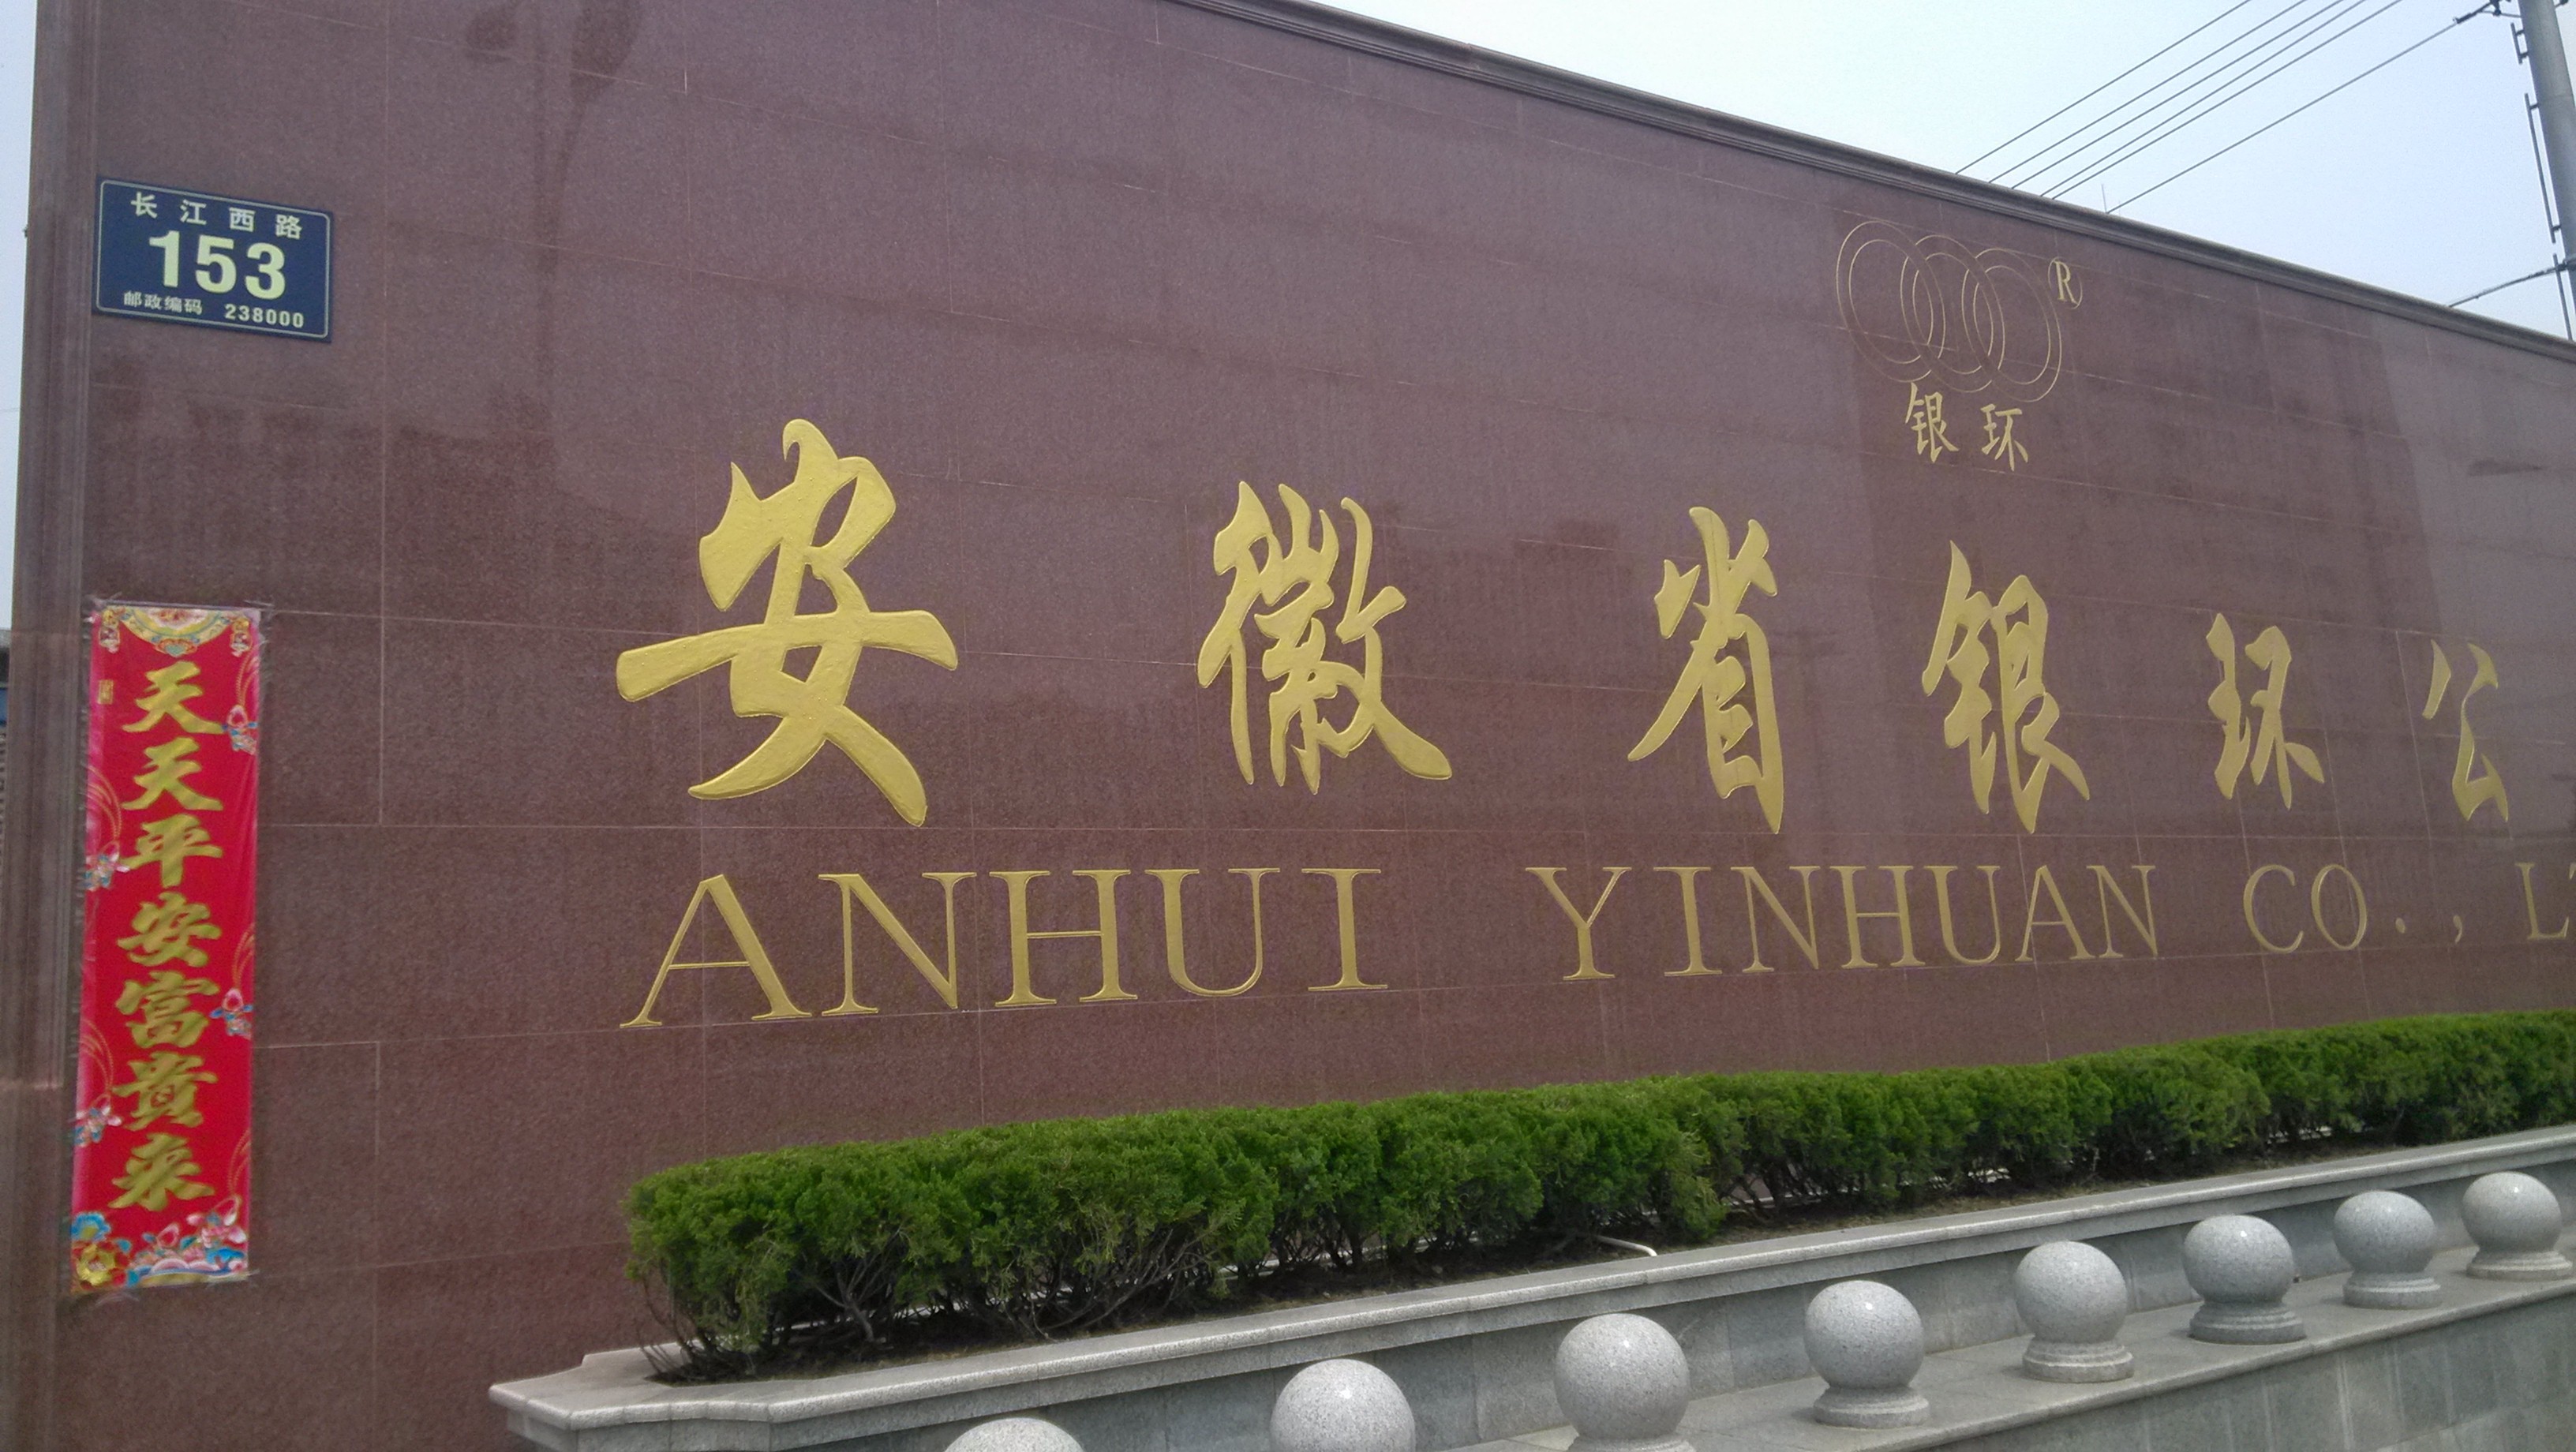 Chaohu Yinhuan Navigation Aids Co., Ltd